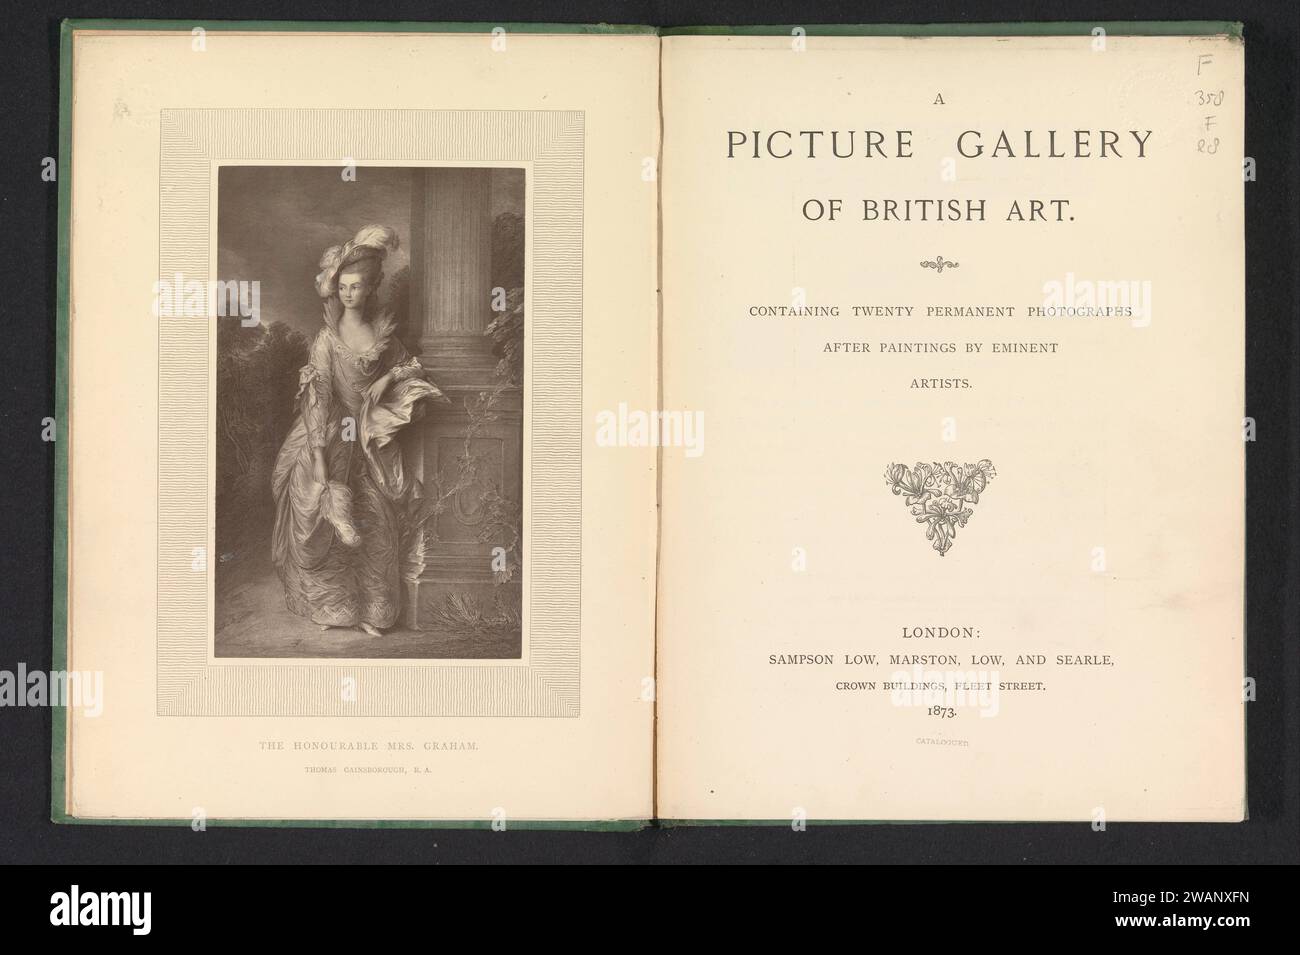 Une galerie de tableaux d'art britannique contenant vingt photographies permanentes d'après des peintures d'artistes éminents, Marston, Low, et Searle Sampson Low, livre de 1873, papier de Londres. carton. lin (matériel) Banque D'Images